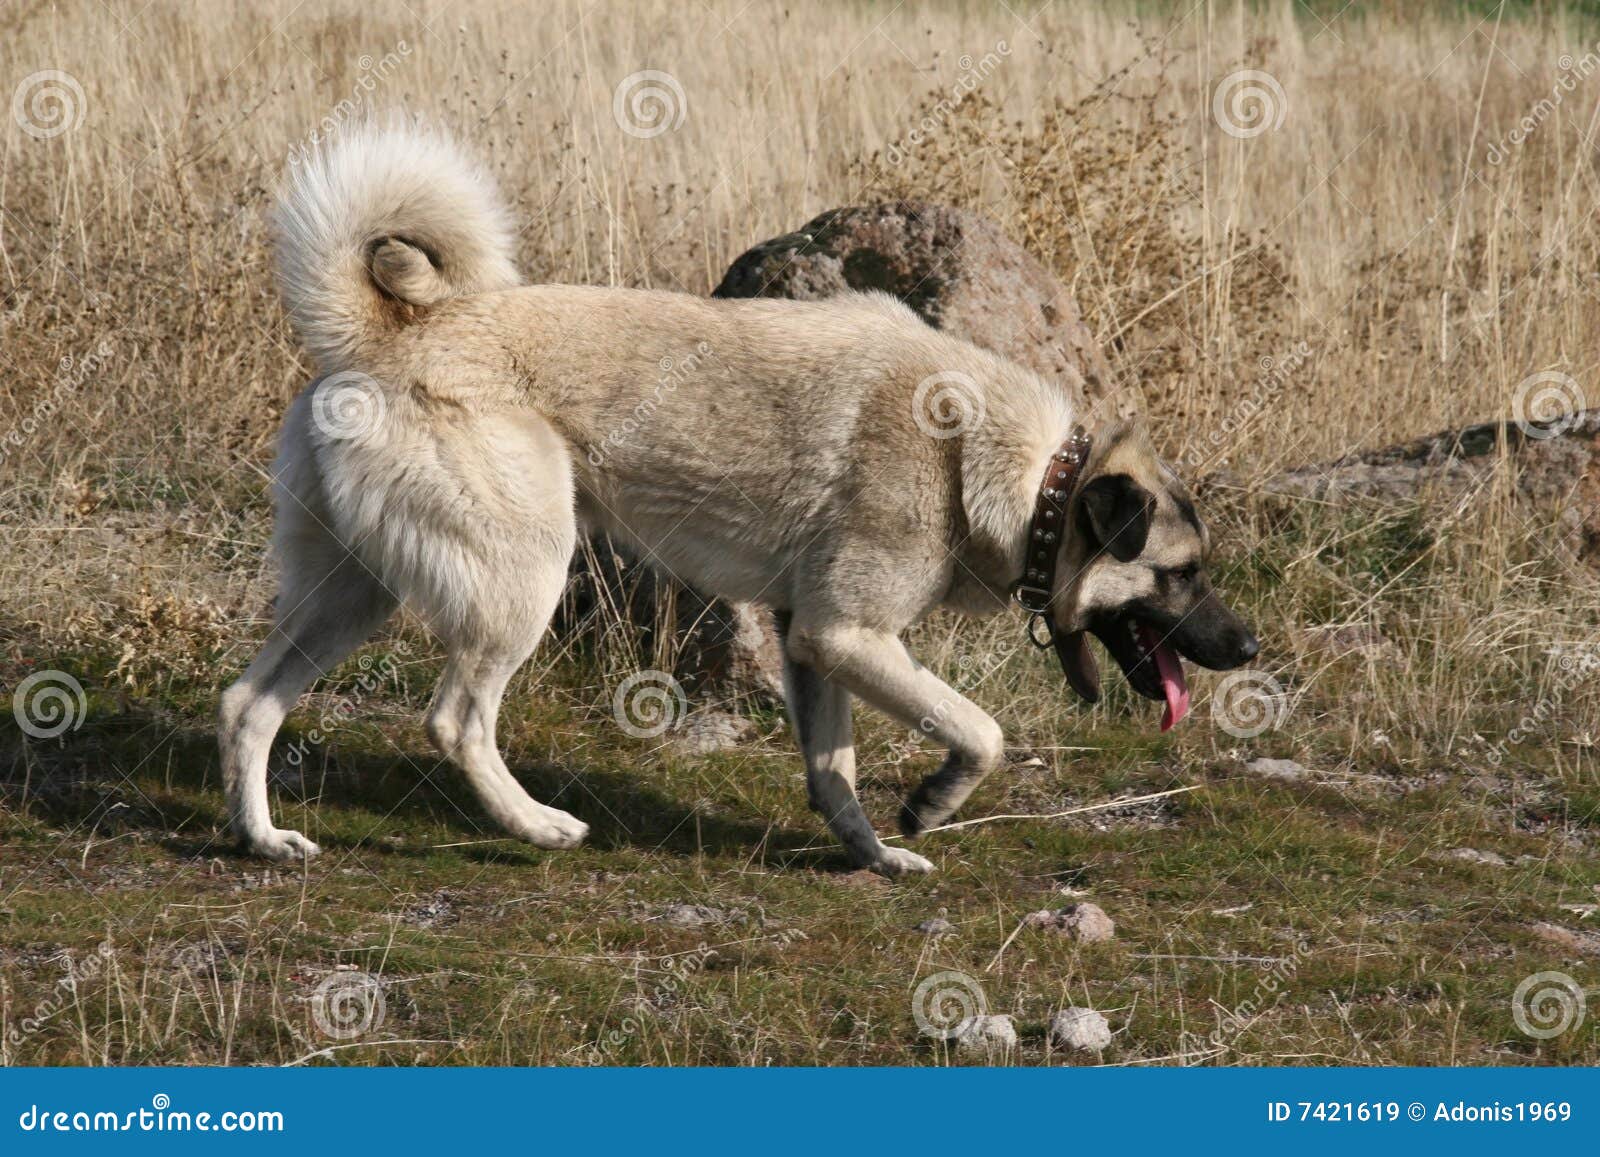 anatolian shepherd dog kangal